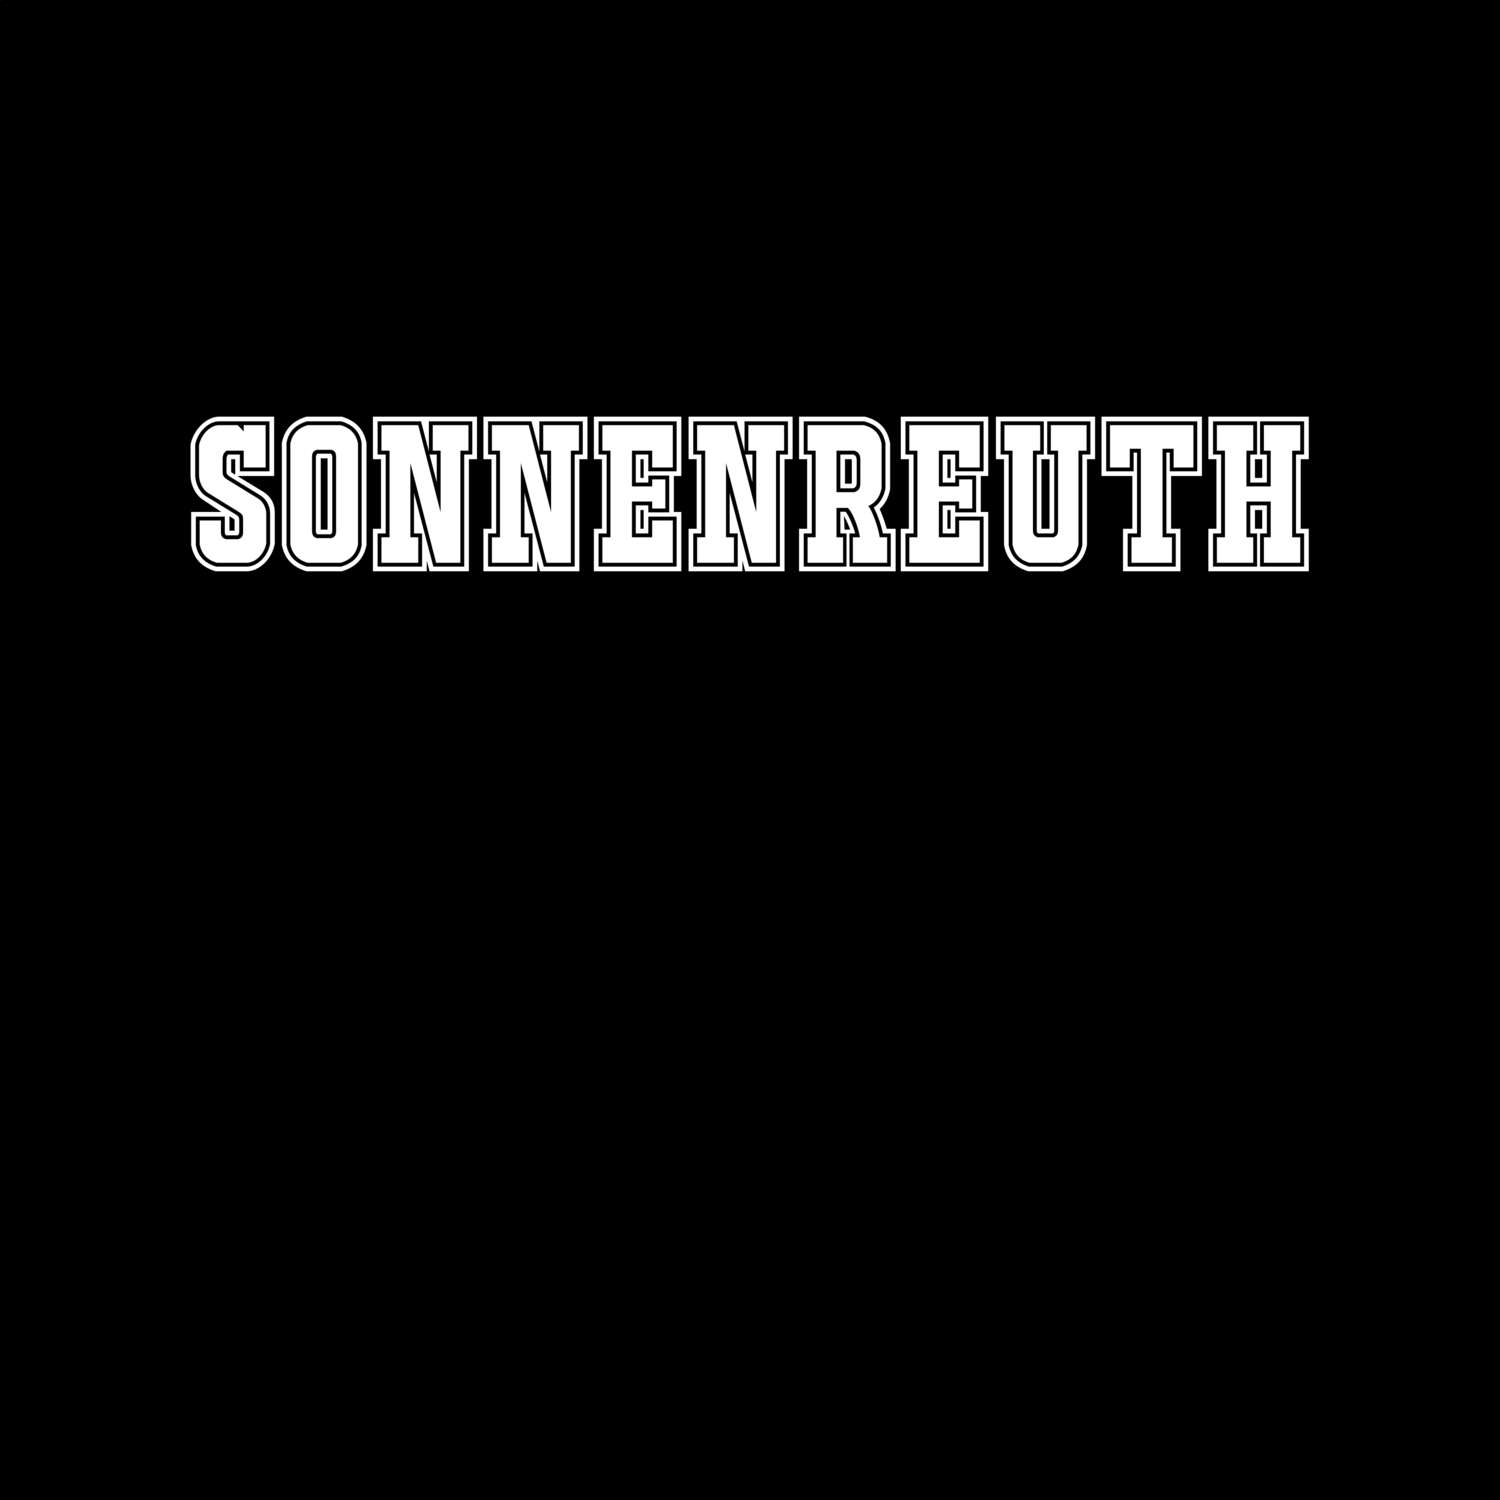 Sonnenreuth T-Shirt »Classic«